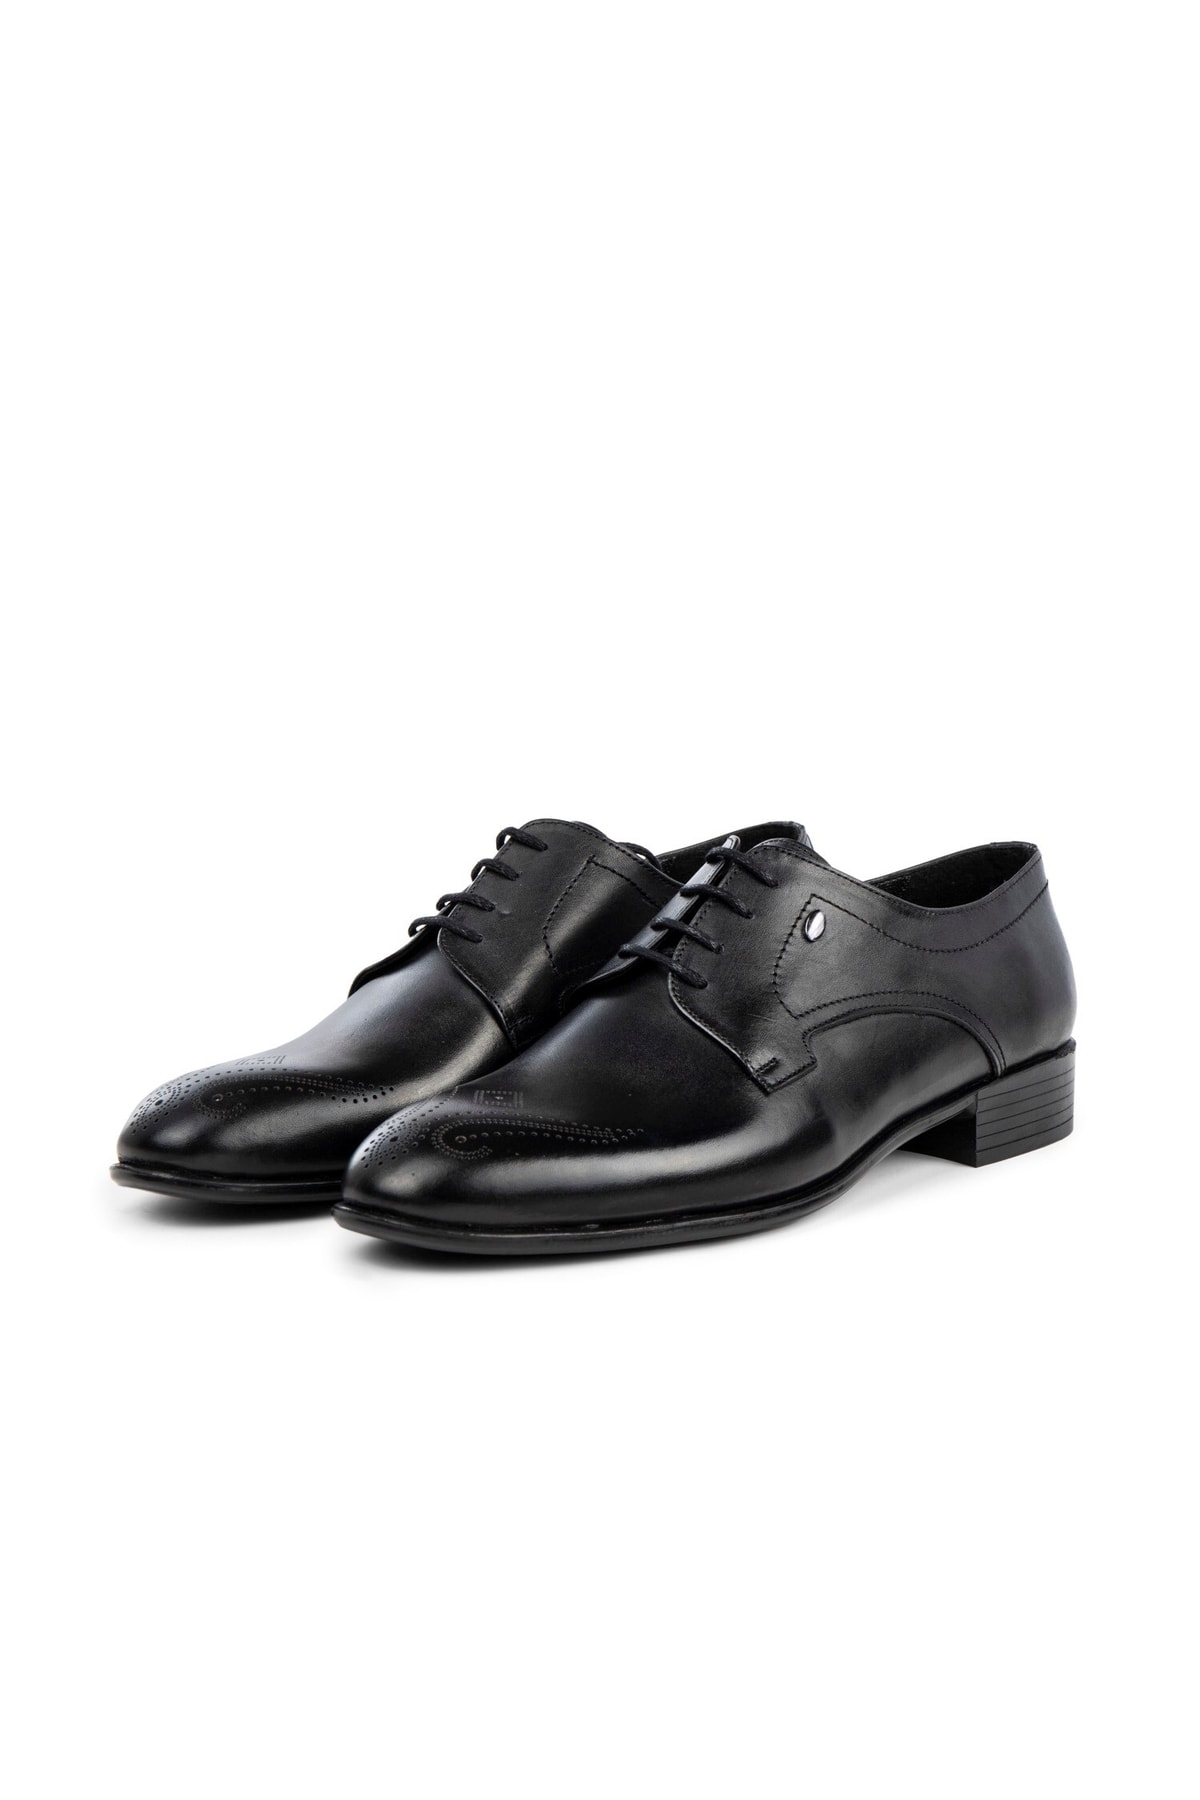 Ducavelli Taura Genuine Leather Men's Classic Shoes, Derby Classic Shoes, Laced Classic Shoes